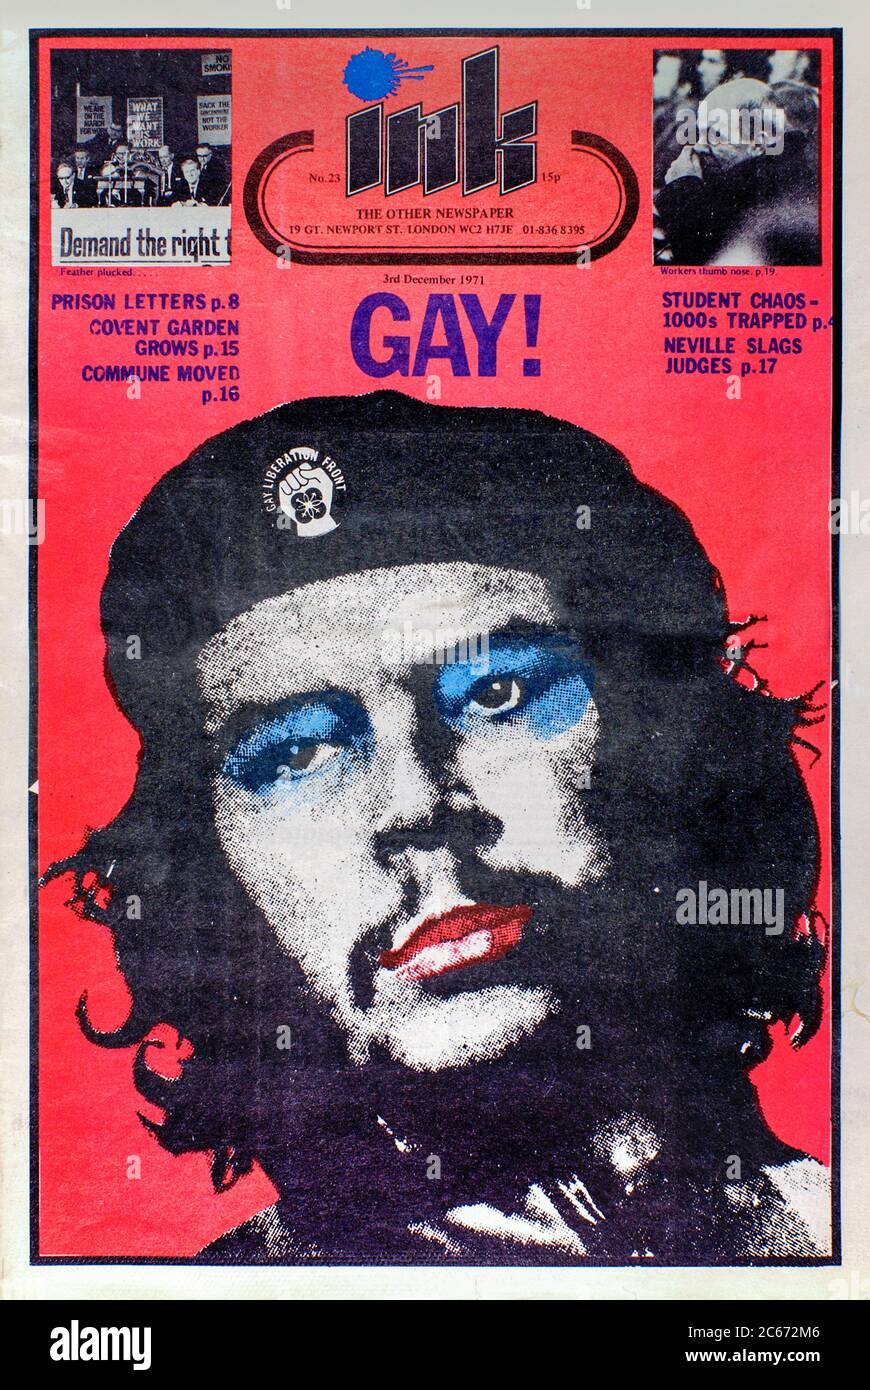 Portada de Ink #23 publicada el 3 de diciembre de 1971 con una fotografía del Che Guevara usando maquillaje y una insignia del frente de Liberación Gay en su bereta. Revista Ink el otro periódico era un servicio subterráneo a la comunidad gay fundada por Richard Neville en mayo de 1971. Foto de stock